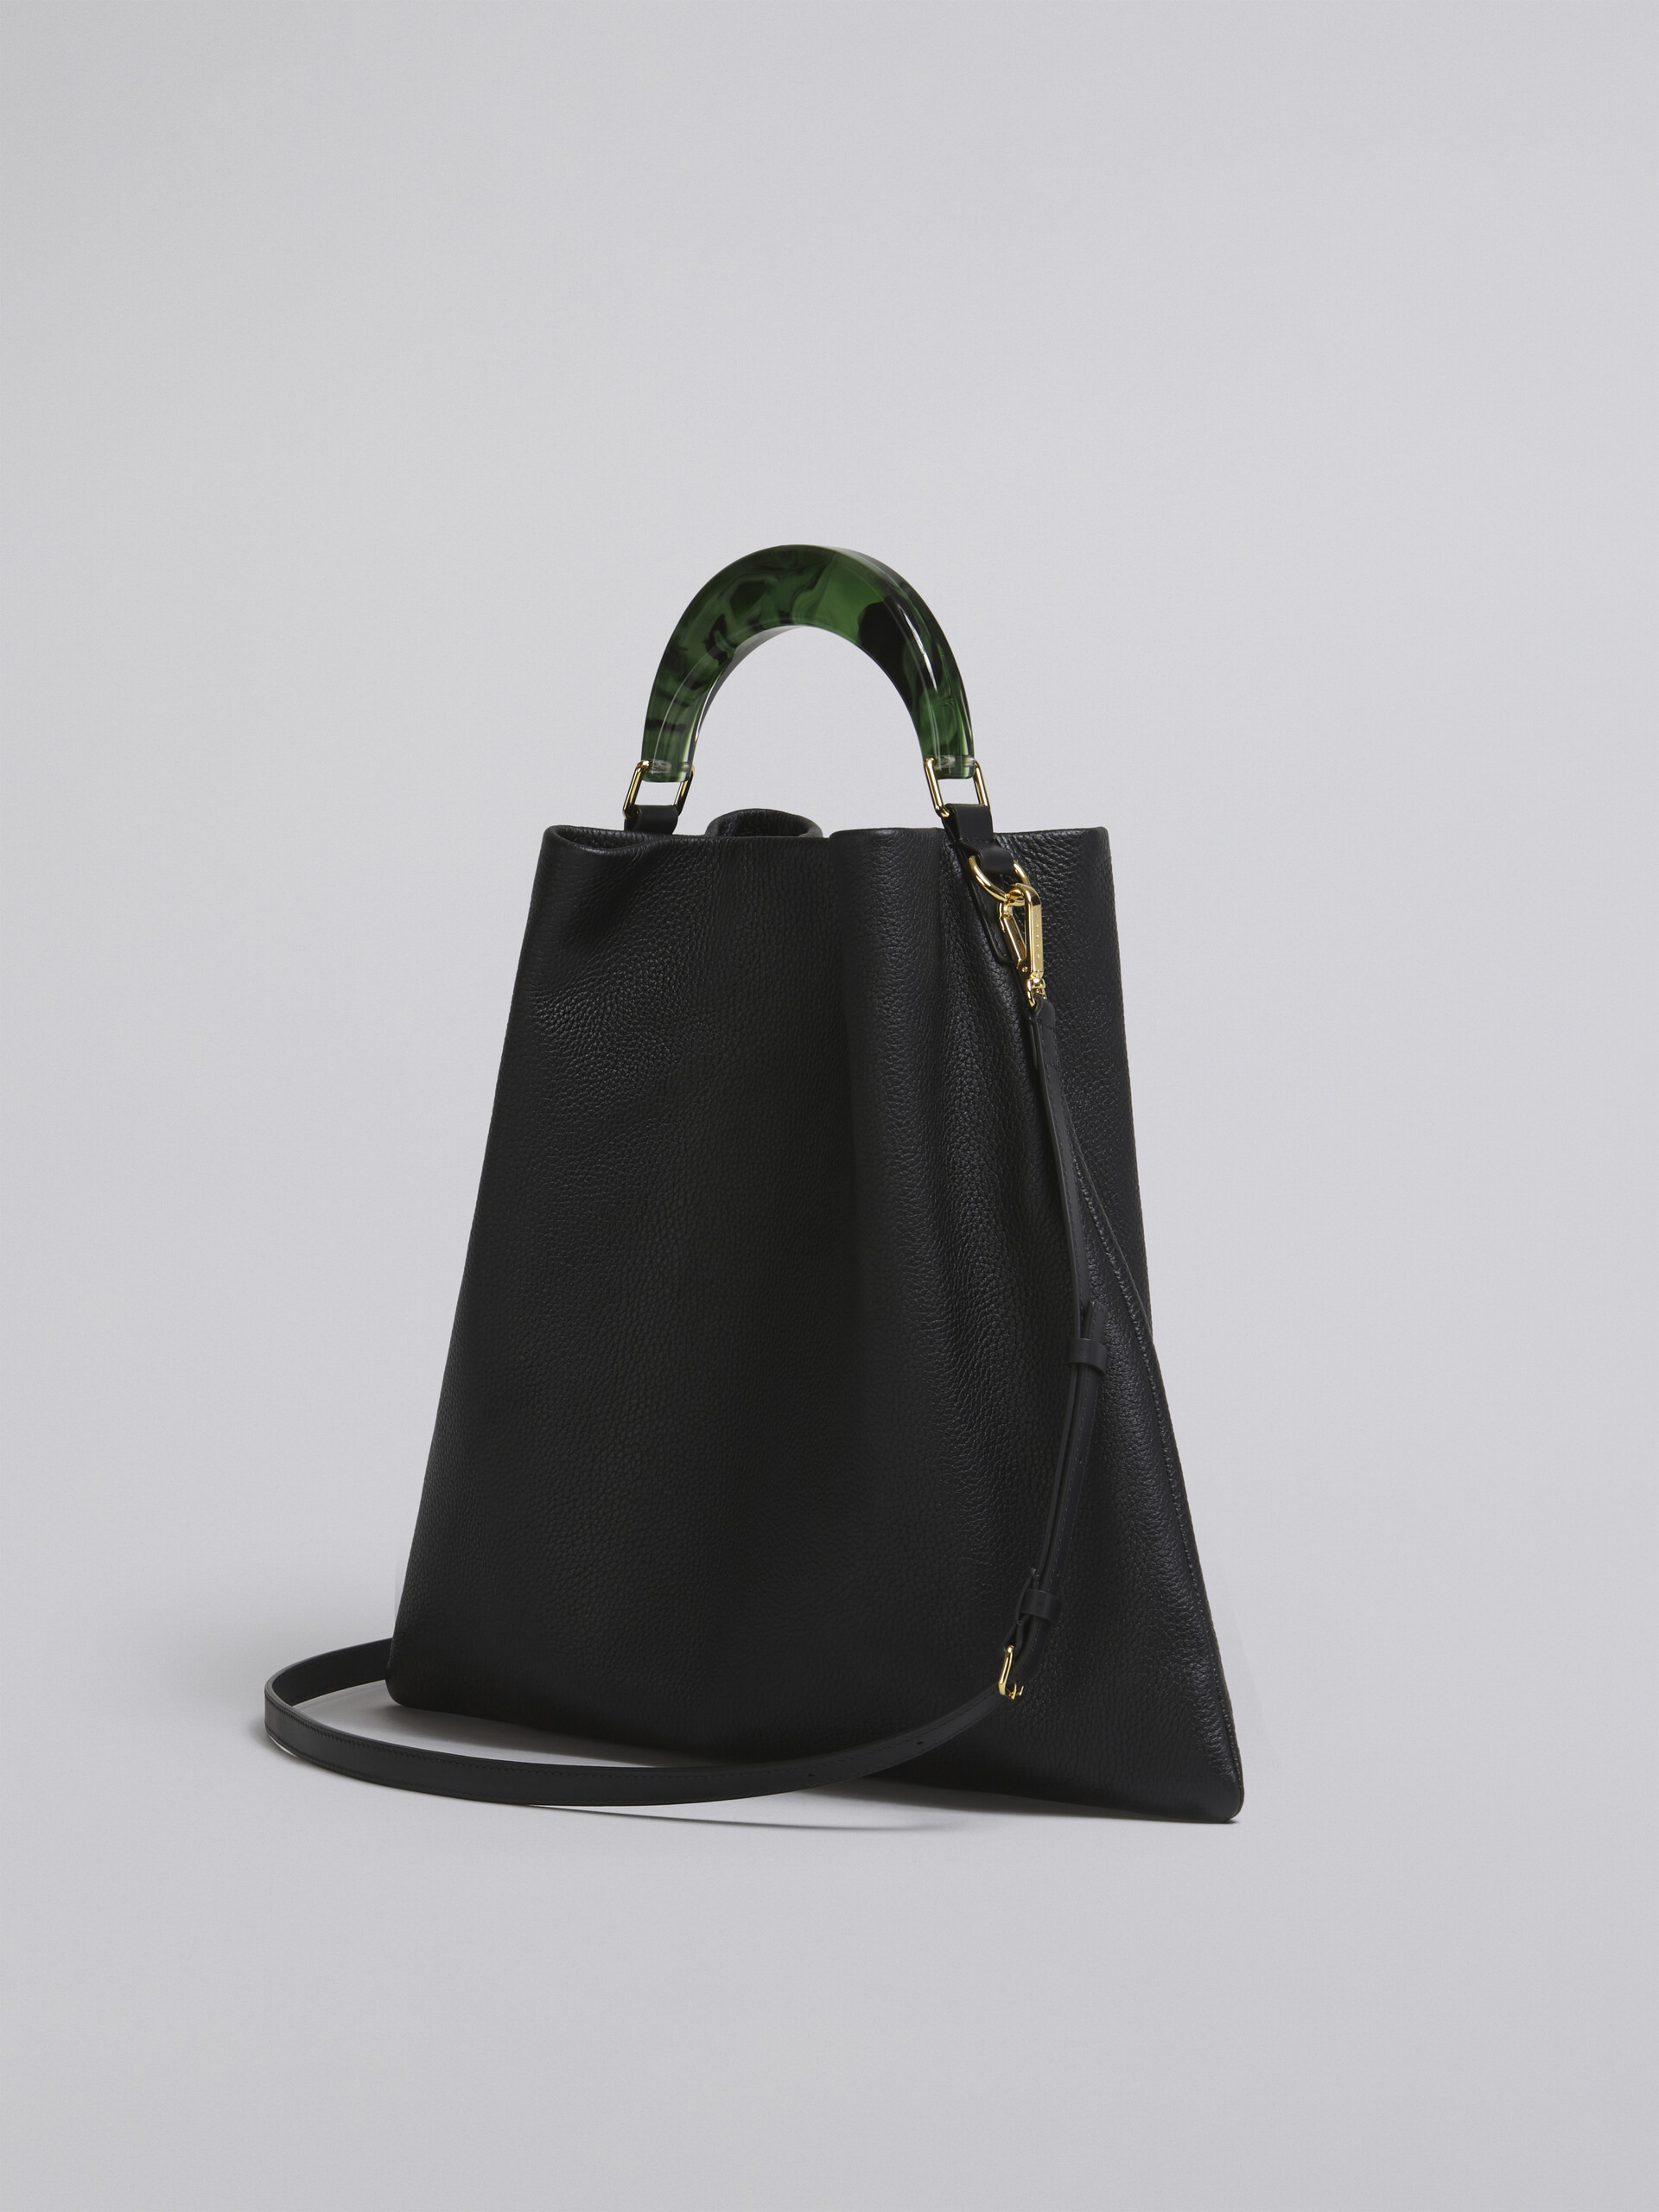 Venice medium bag in black leather - Shoulder Bag - Image 3